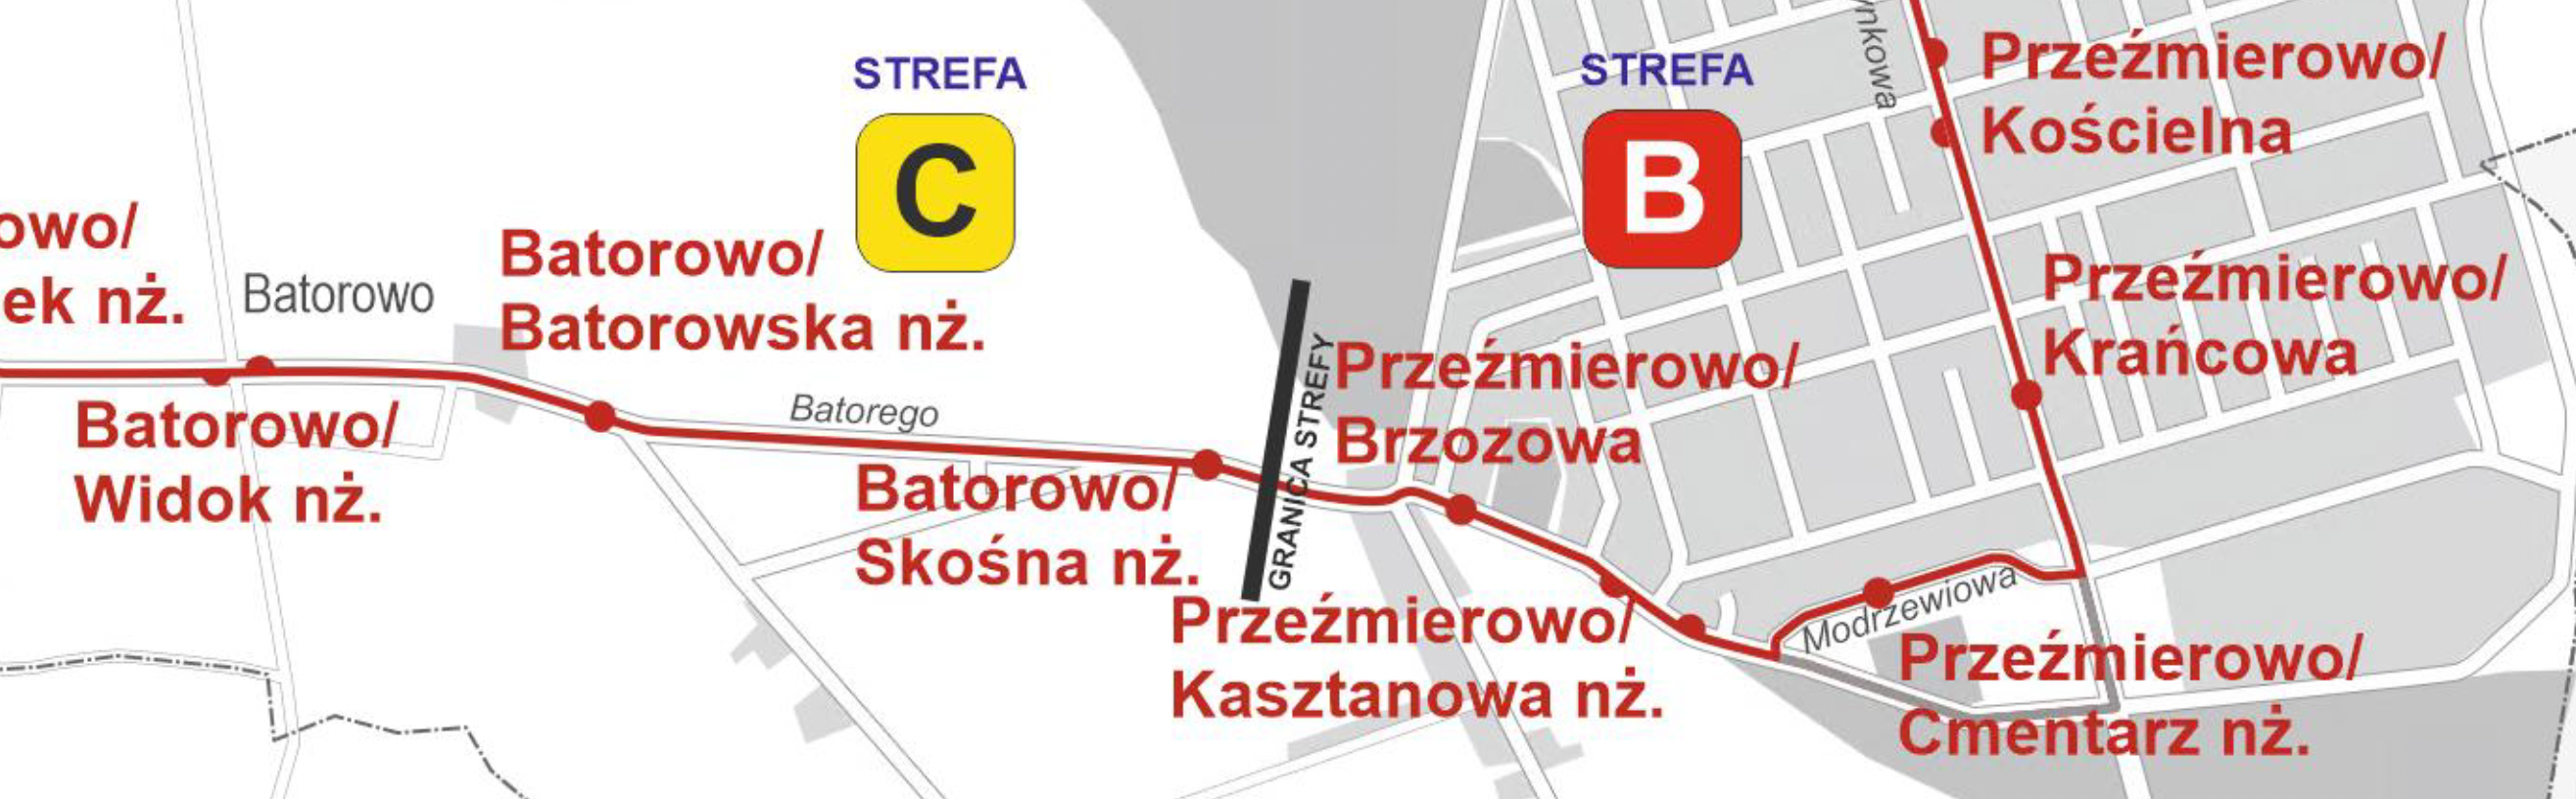 Zarząd transportu Miejskiego w Poznaniu informuje, że w związku z remontem ulicy Sosnowej w Przeźmierowie, od poniedziałku (6 lutego) autobusy linii nr 802, 803, 804, 889 i 258 skierowane zostaną objazdem ulicą Modrzewiową. Na czas prac przystanek Przeźmierowo/Cmentarz zostanie tymczasowo przeniesiony na ulicę Modrzewiową. 